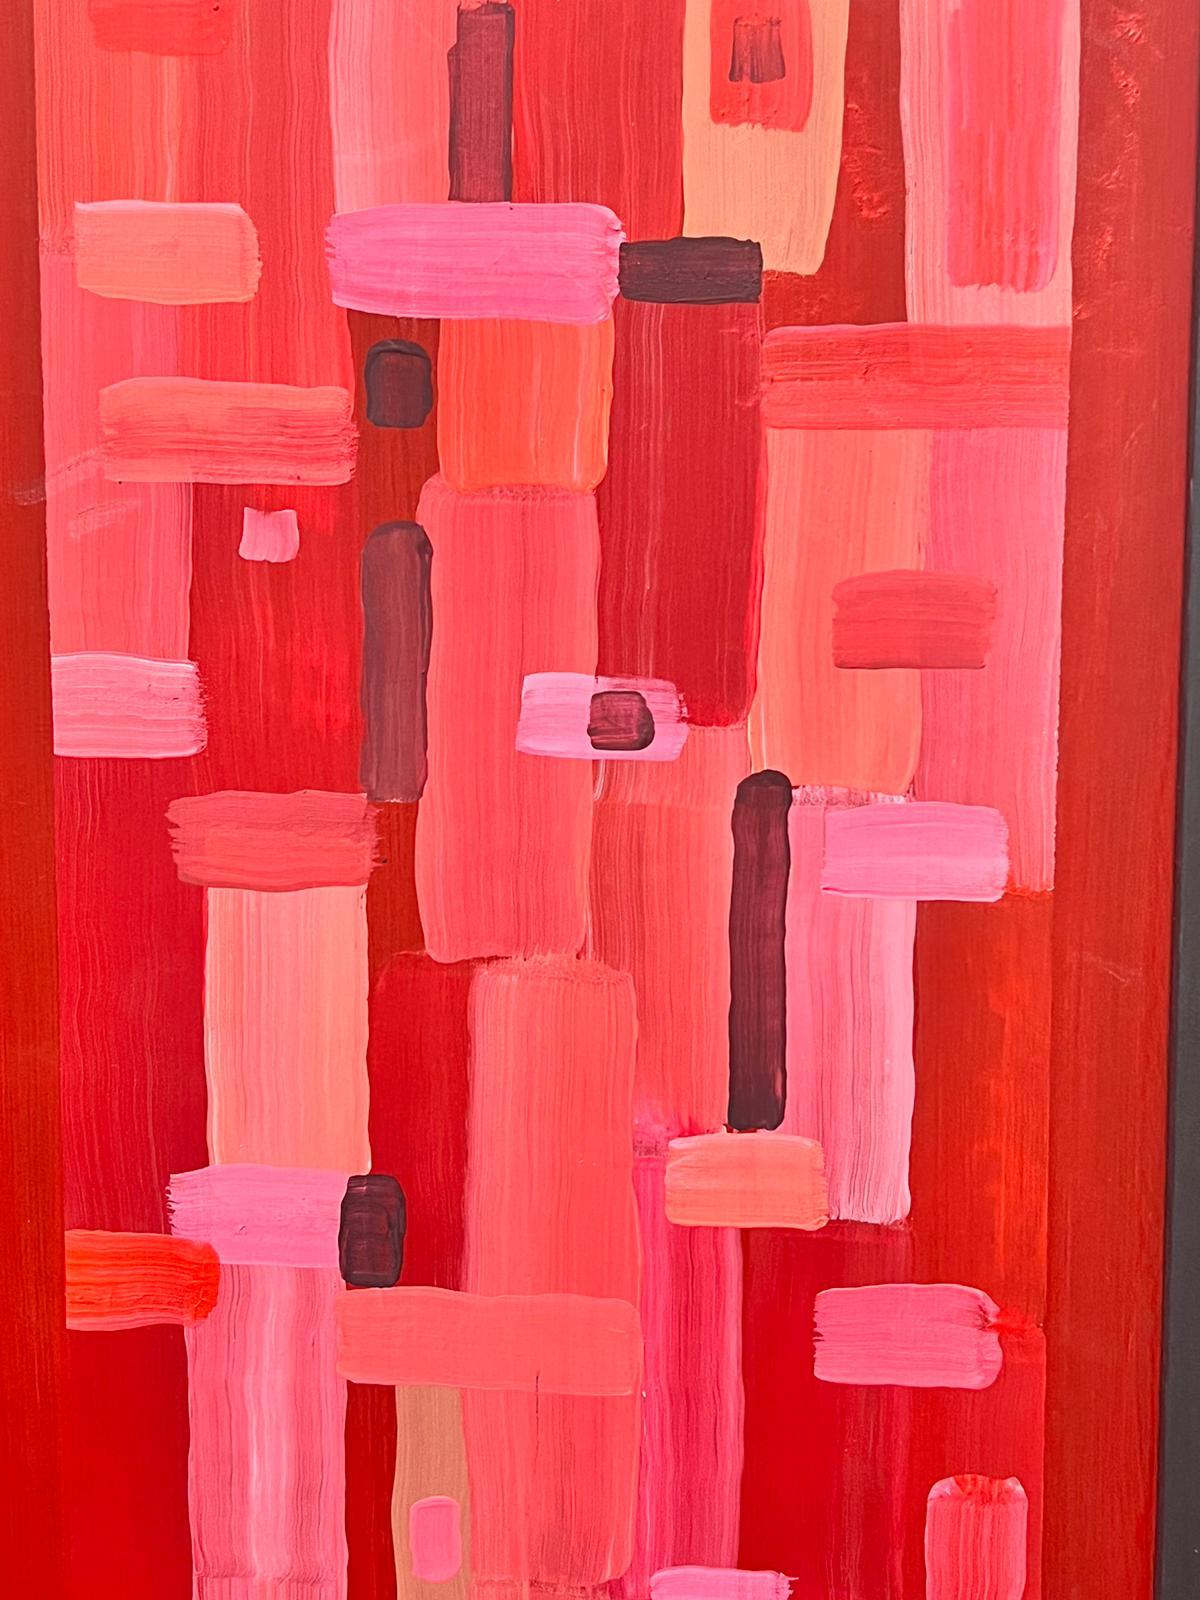 Peinture britannique cubiste géométrique abstraite de formes abstraites roses et rouges - Géométrique abstrait Painting par Contemporary British